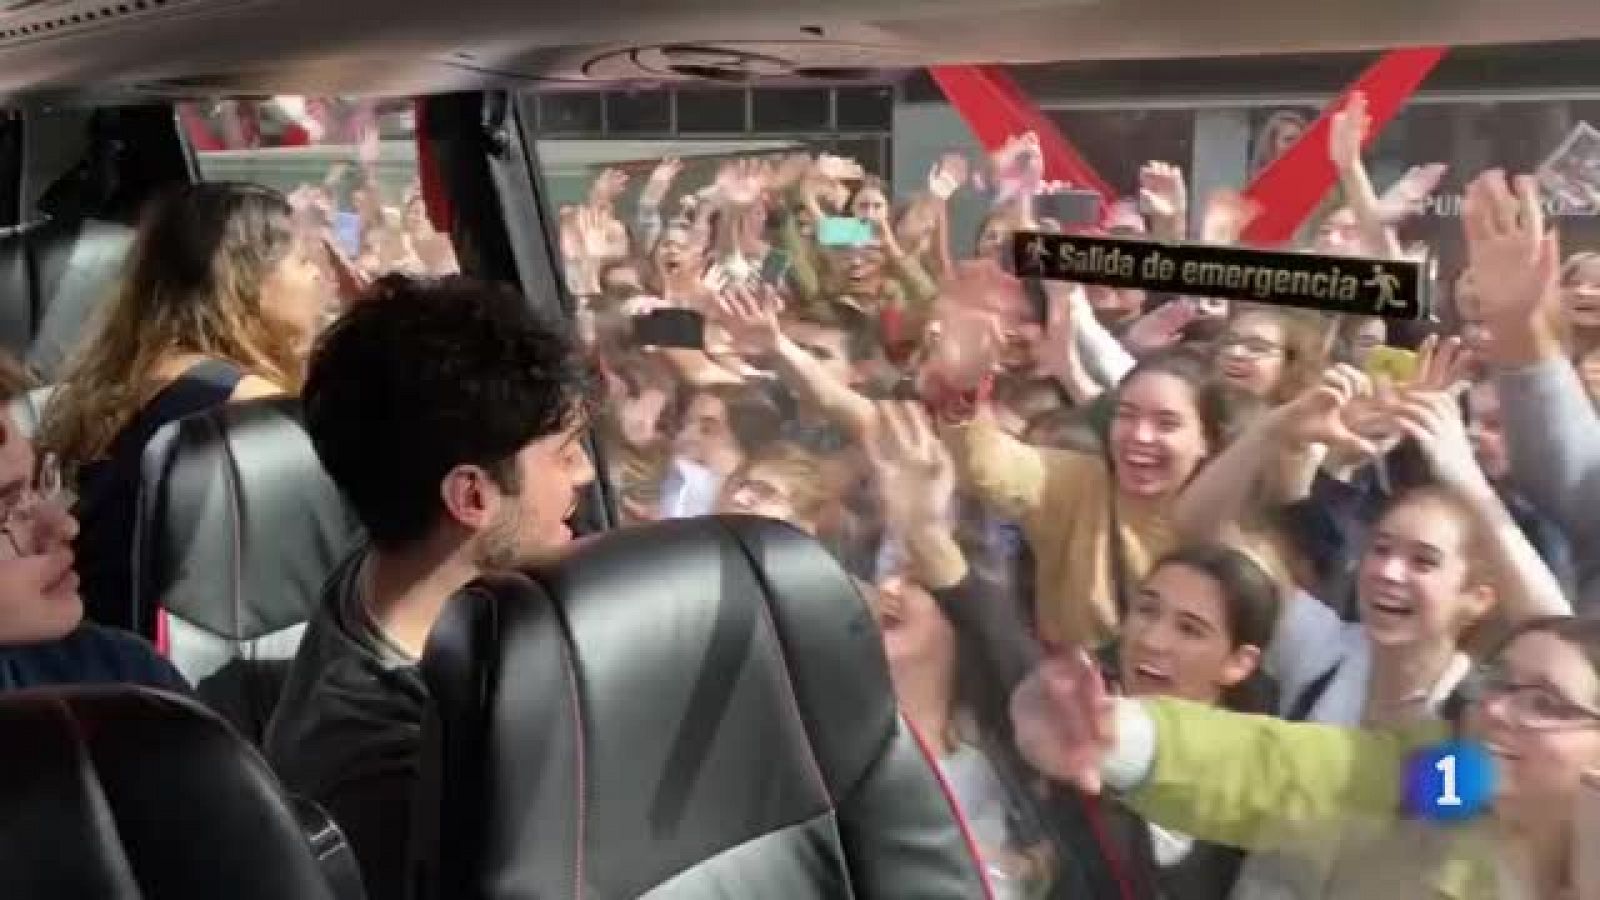 Golpes de los fans en el cristal del autocar que lleva a Anajú, Gèrard, Hugo y Rafa de vuelta a la Academia tras las firmas en Barcelona.